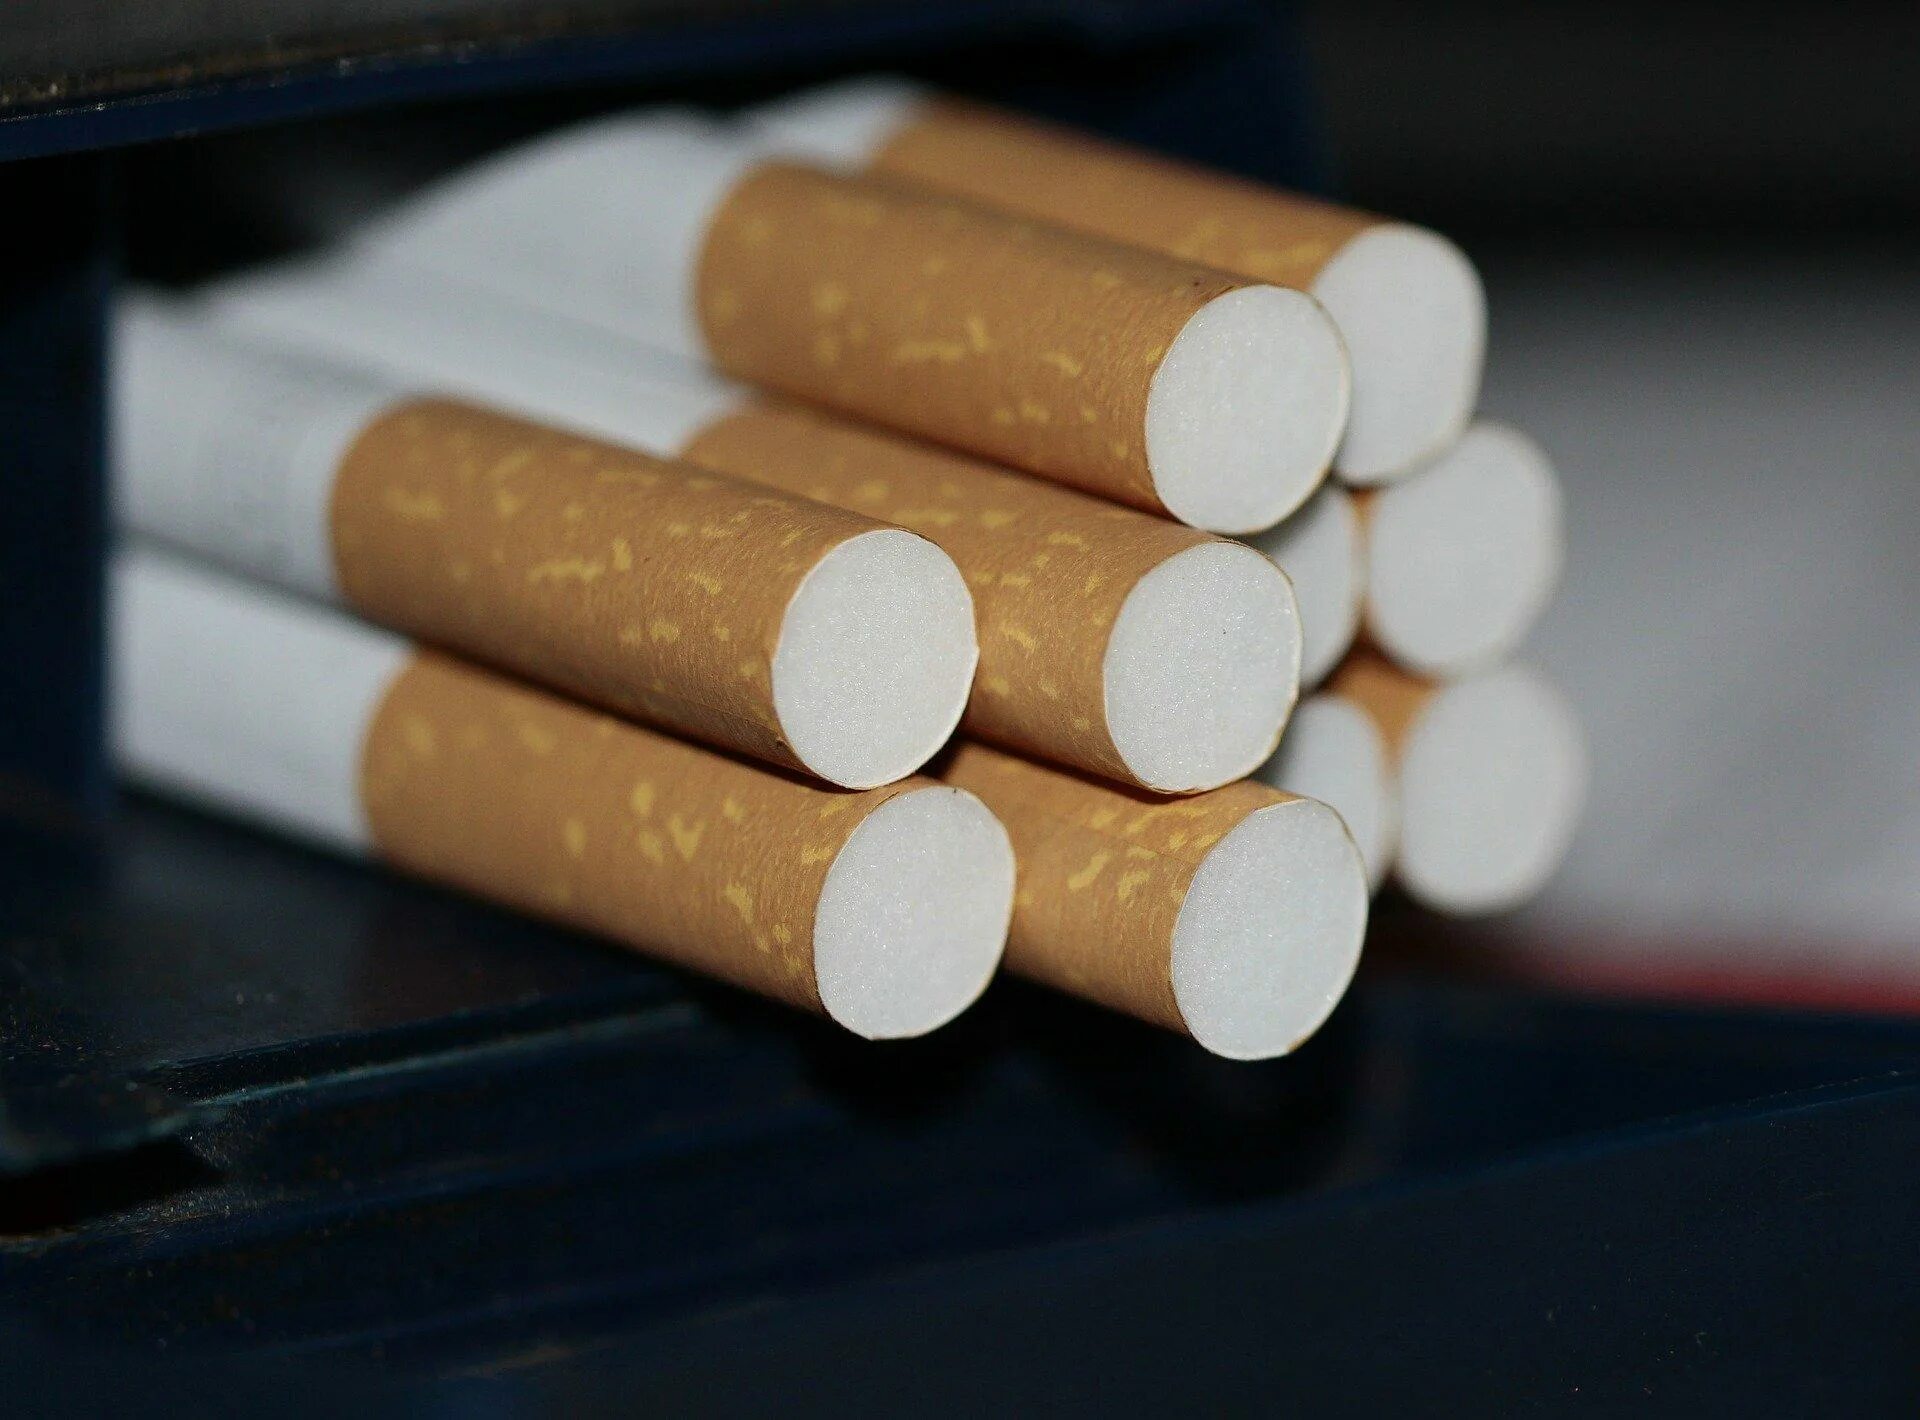 Сигареты. Сигареты с фильтром. Ненастоящие сигареты. Фотографии сигарет. Табачные изделия сигареты